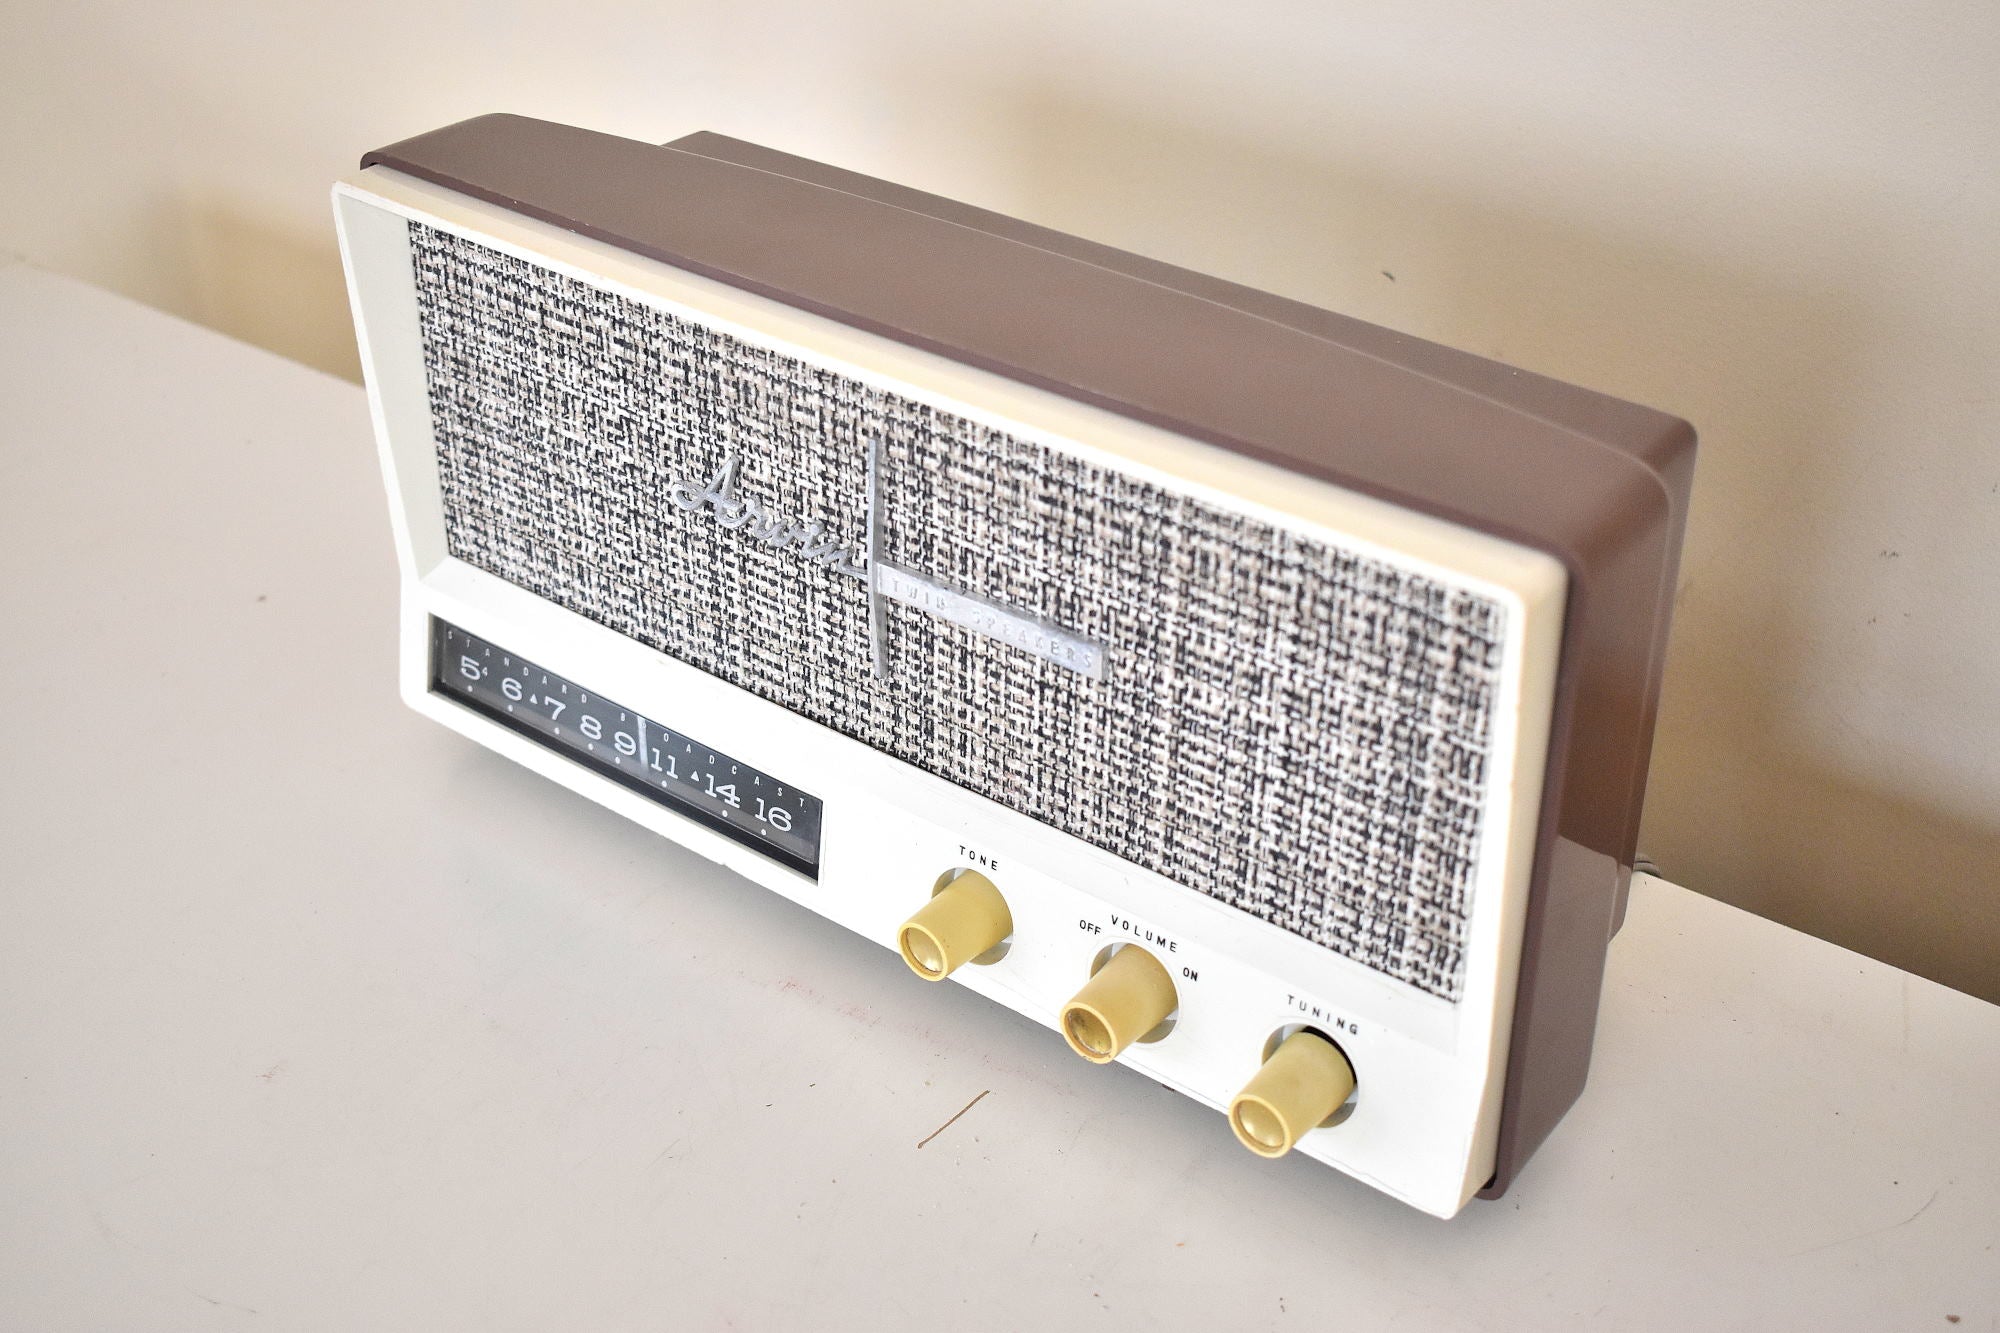 サハラ トープ 1959 アービン モデル 2585 真空管 AM ラジオ クリーンでゴージャスな見た目とサウンド!